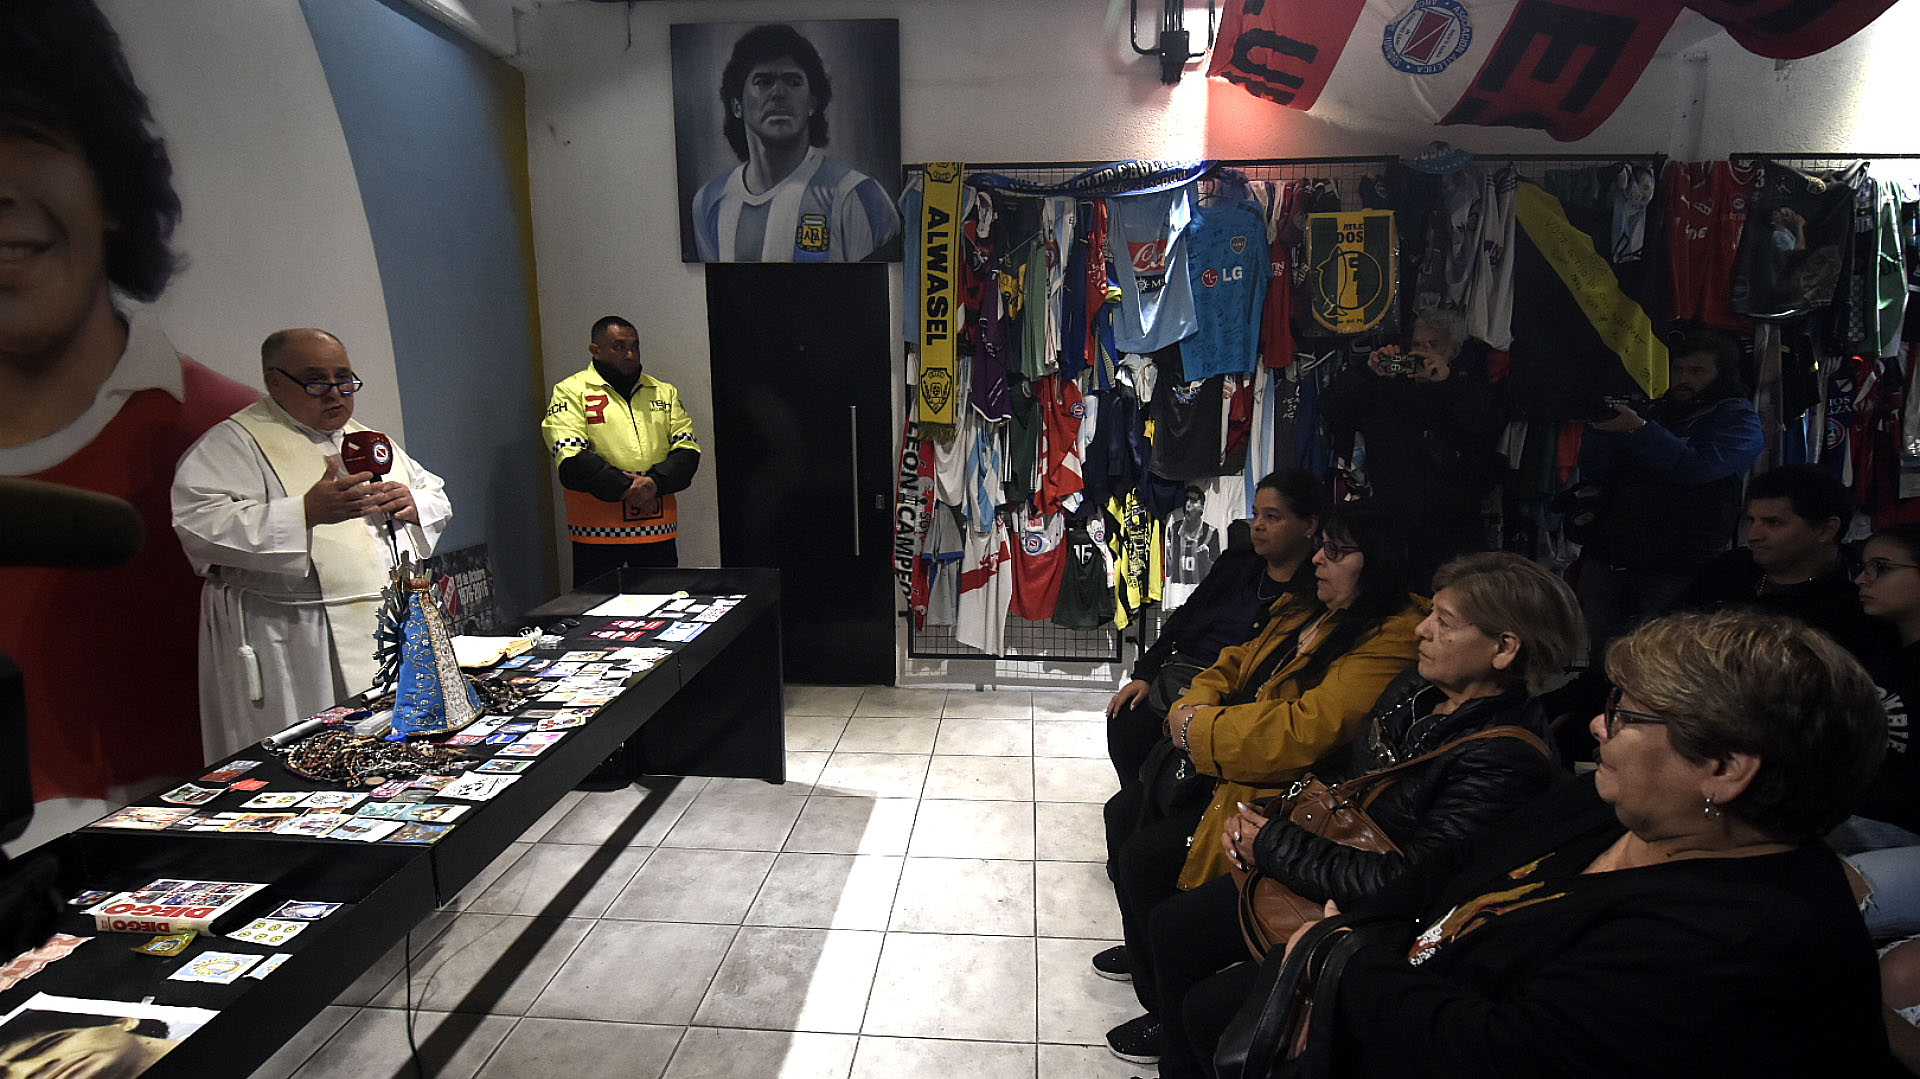 Los detalles del emotivo homenaje a Maradona en Argentinos: hubo una misa en el santuario y participaron sus hermanas